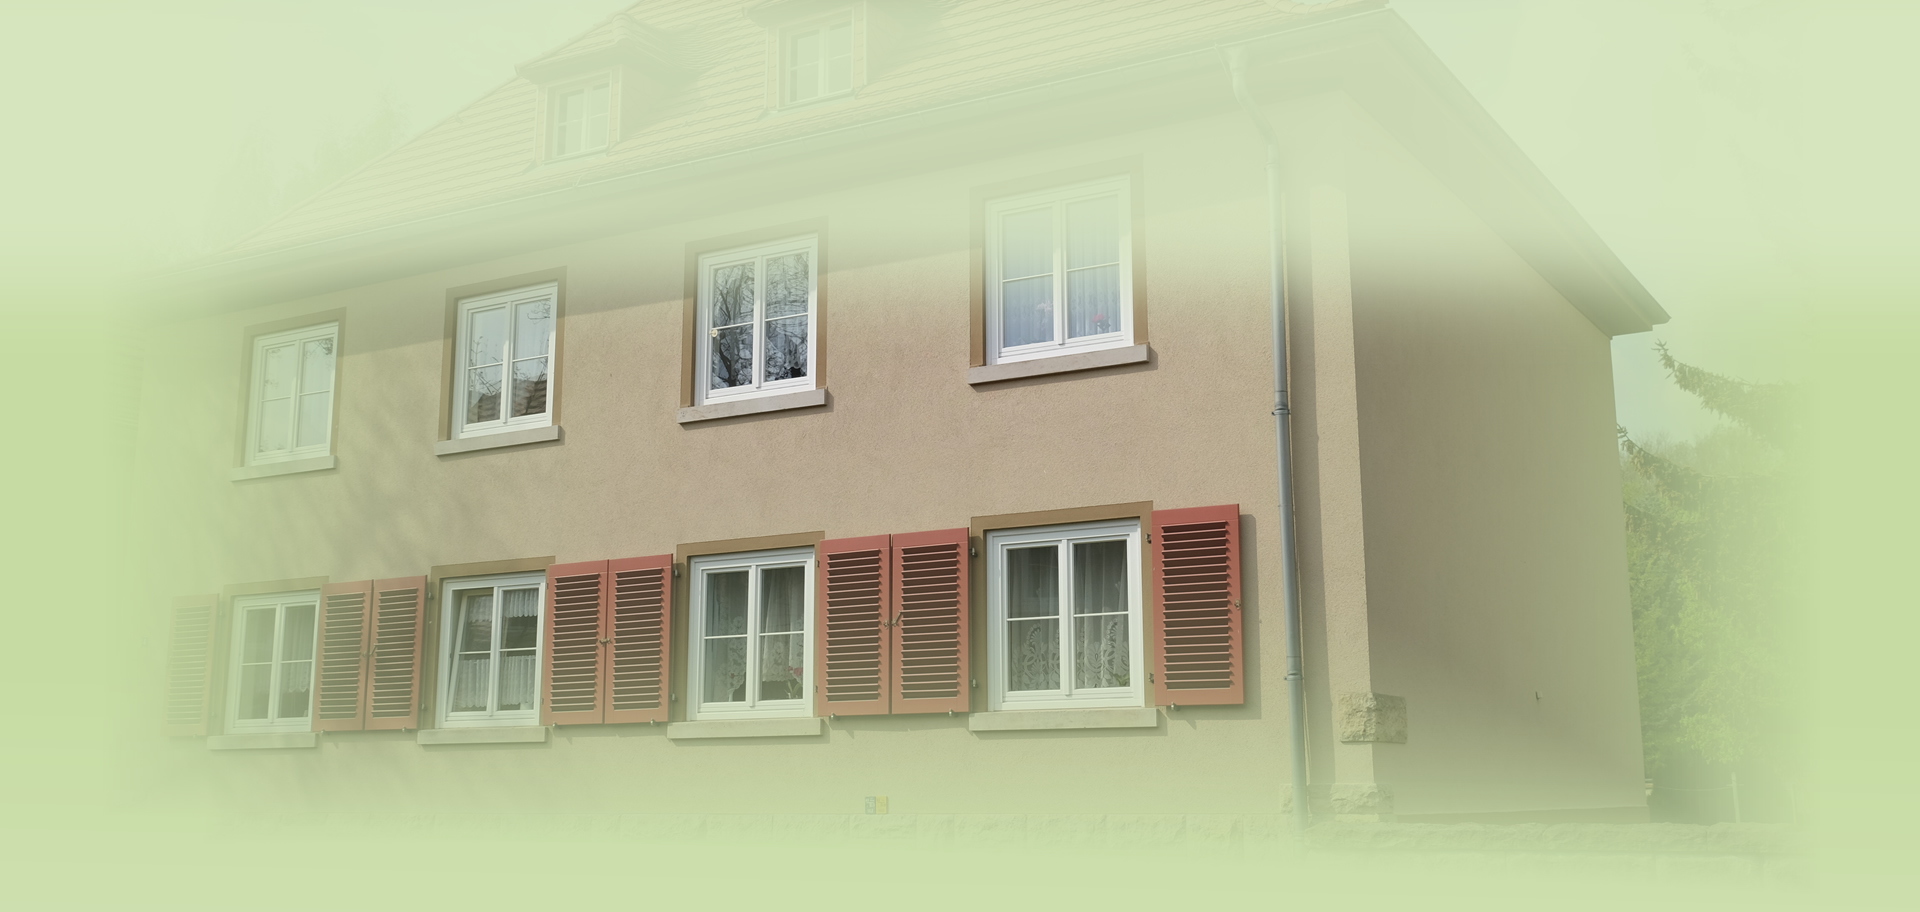 Wohnungsbaugenossenschaft “VGWG Pirna-Süd eG“